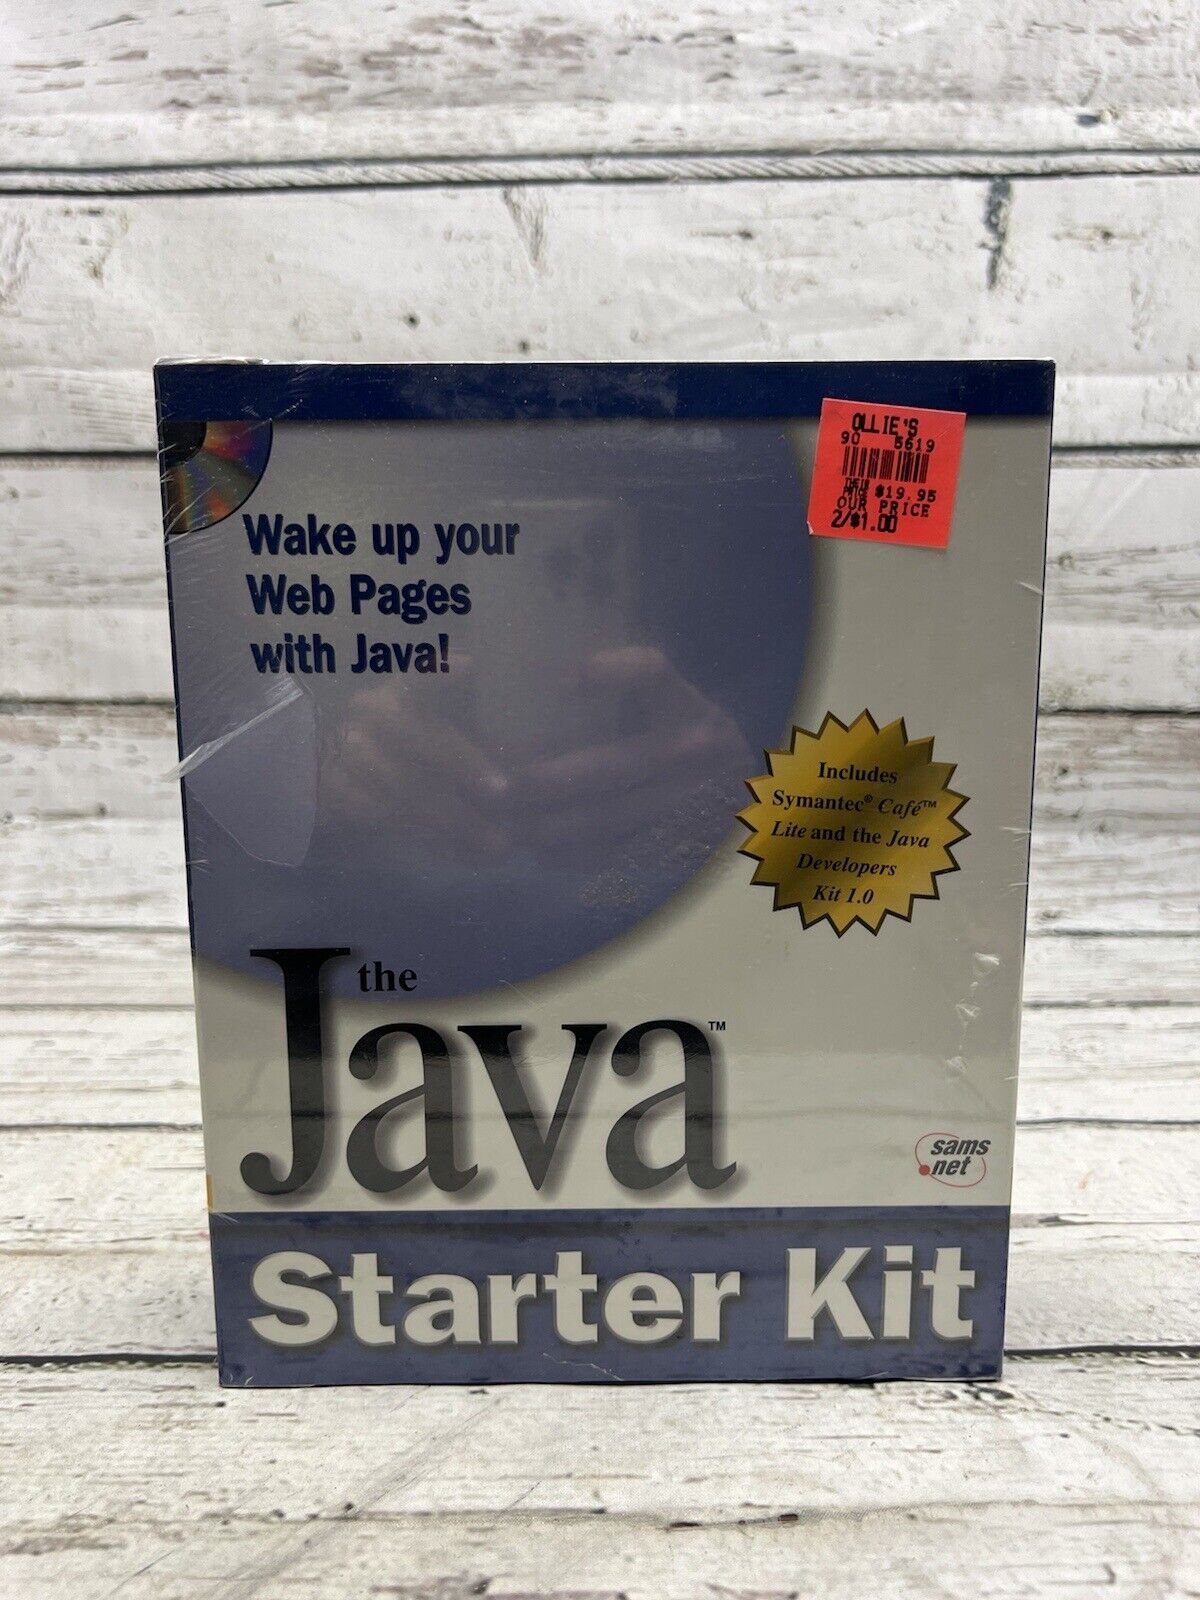 The Java Starter Kit VTG CD-ROM Windows 95 IBM Computer Software - New Sealed